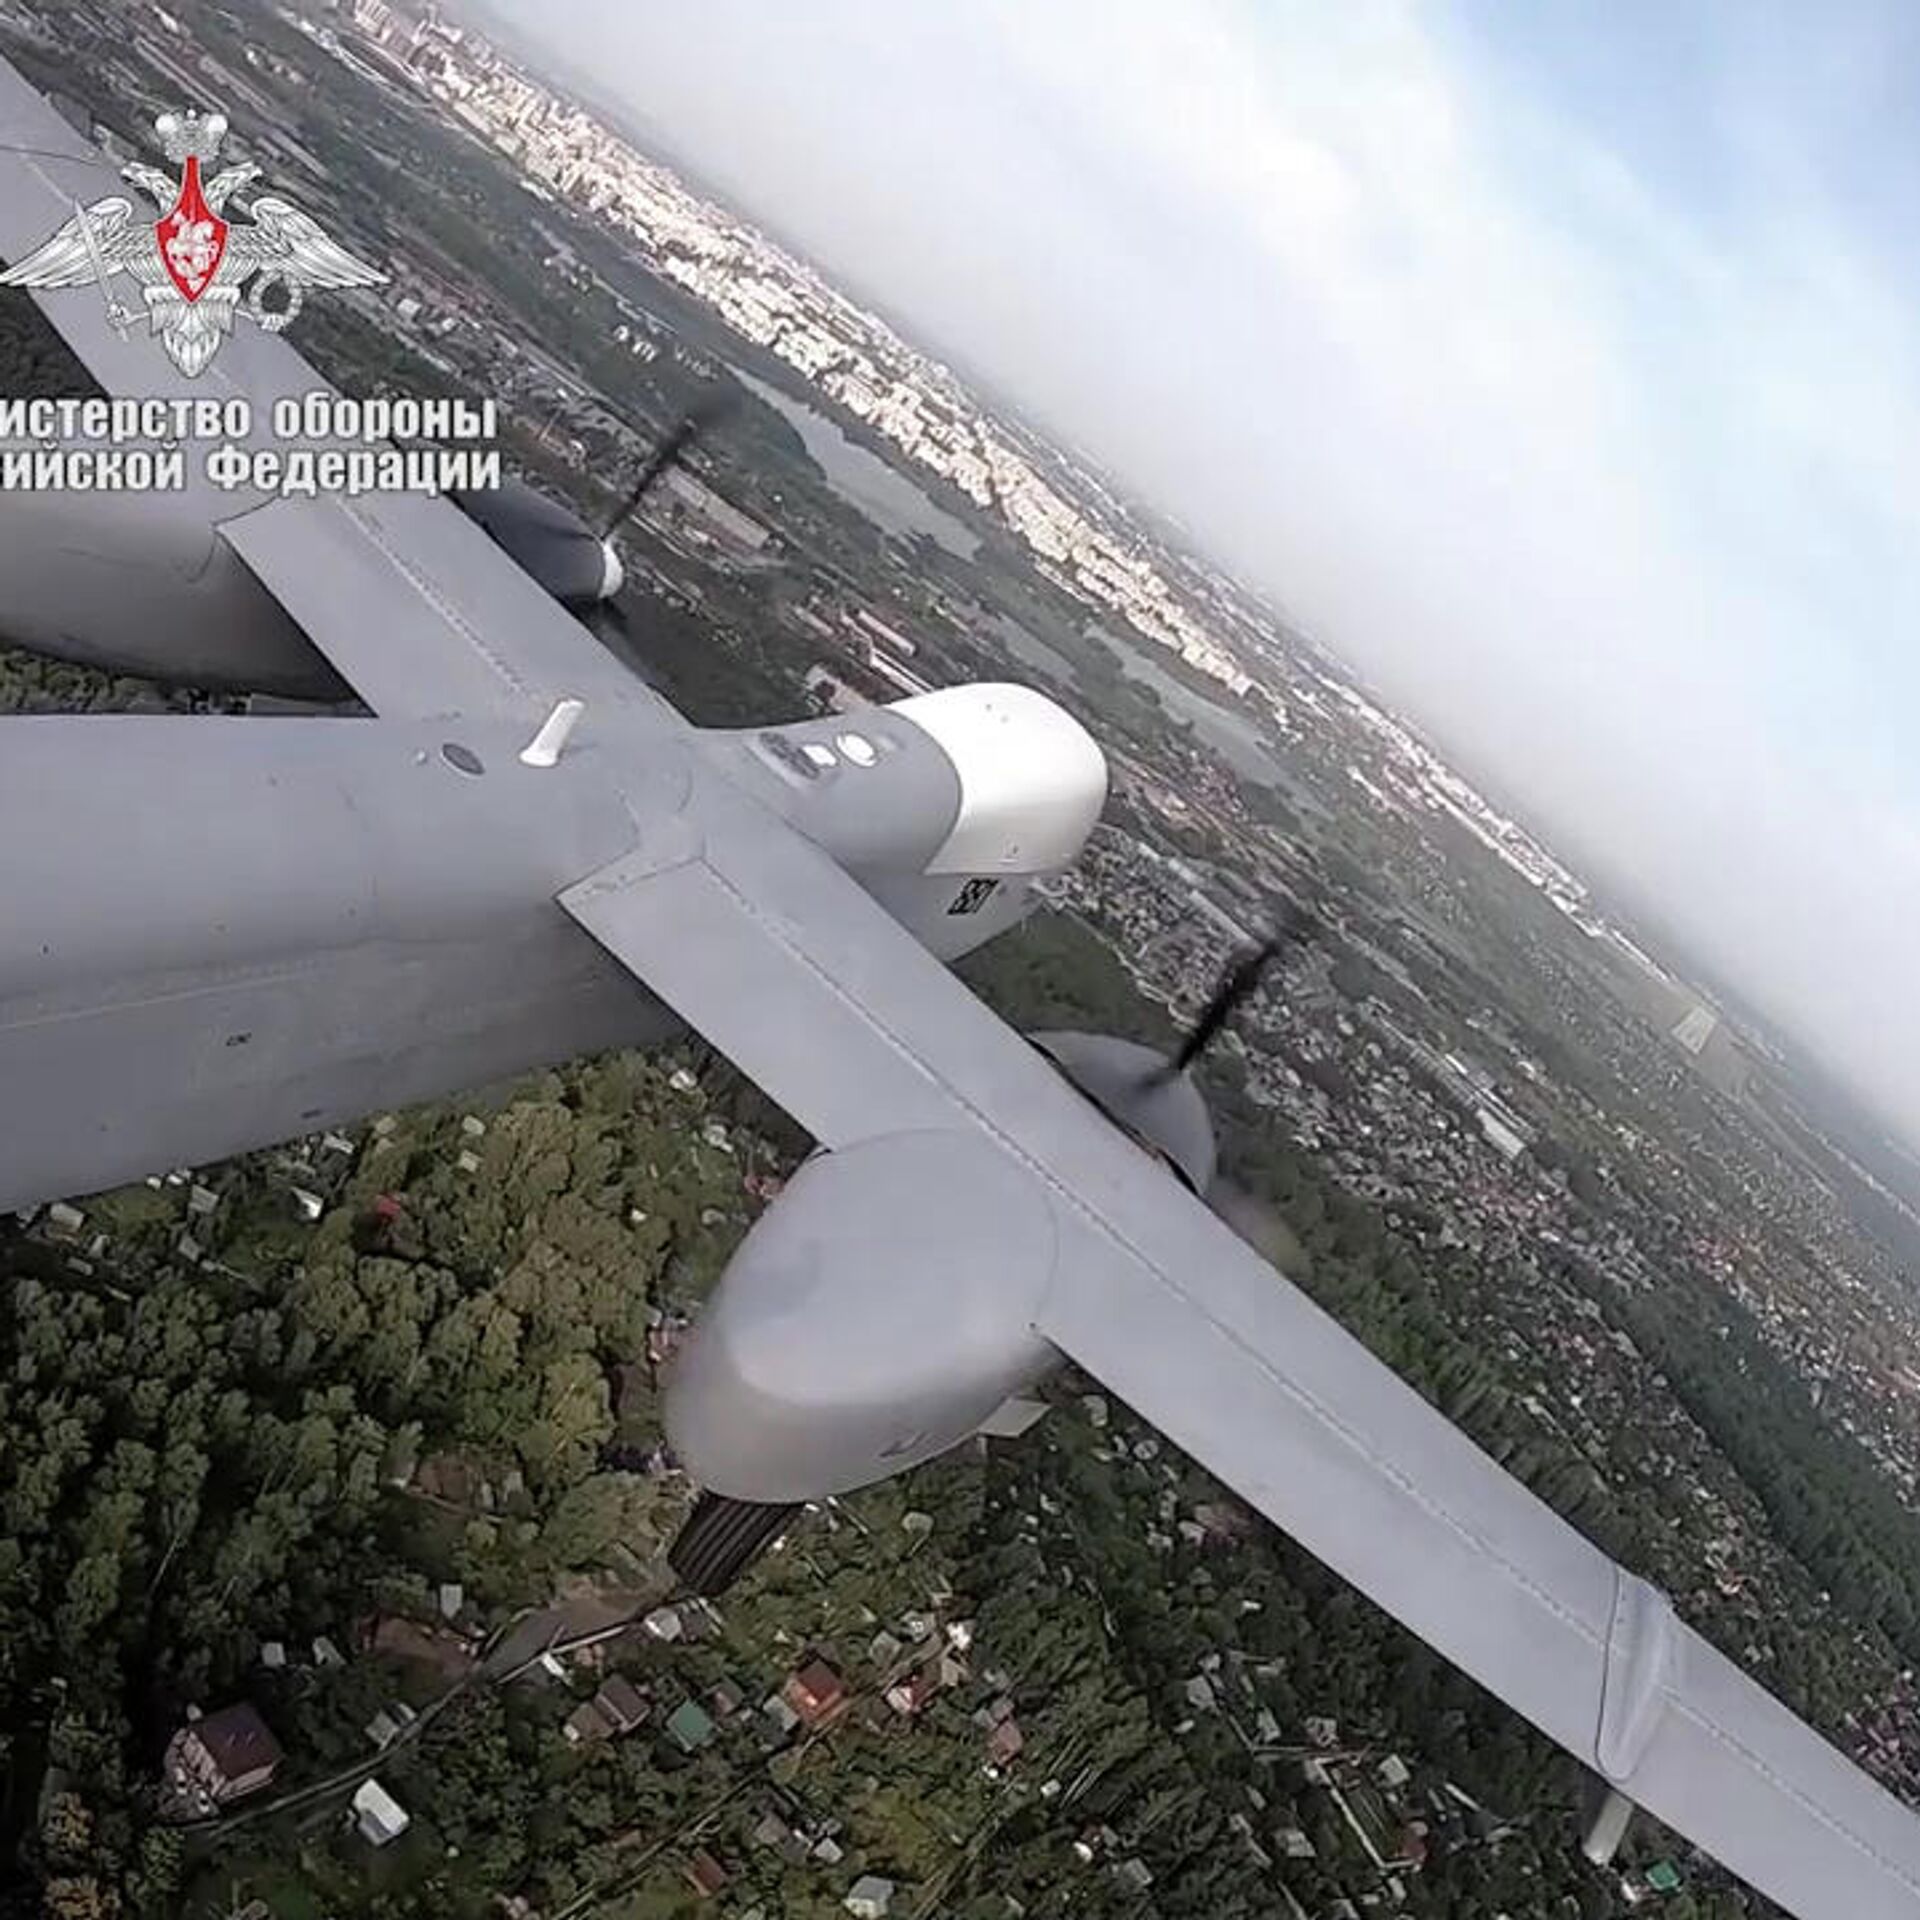 Aventuras del vehículo aéreo no tripulado ruso "Altius"